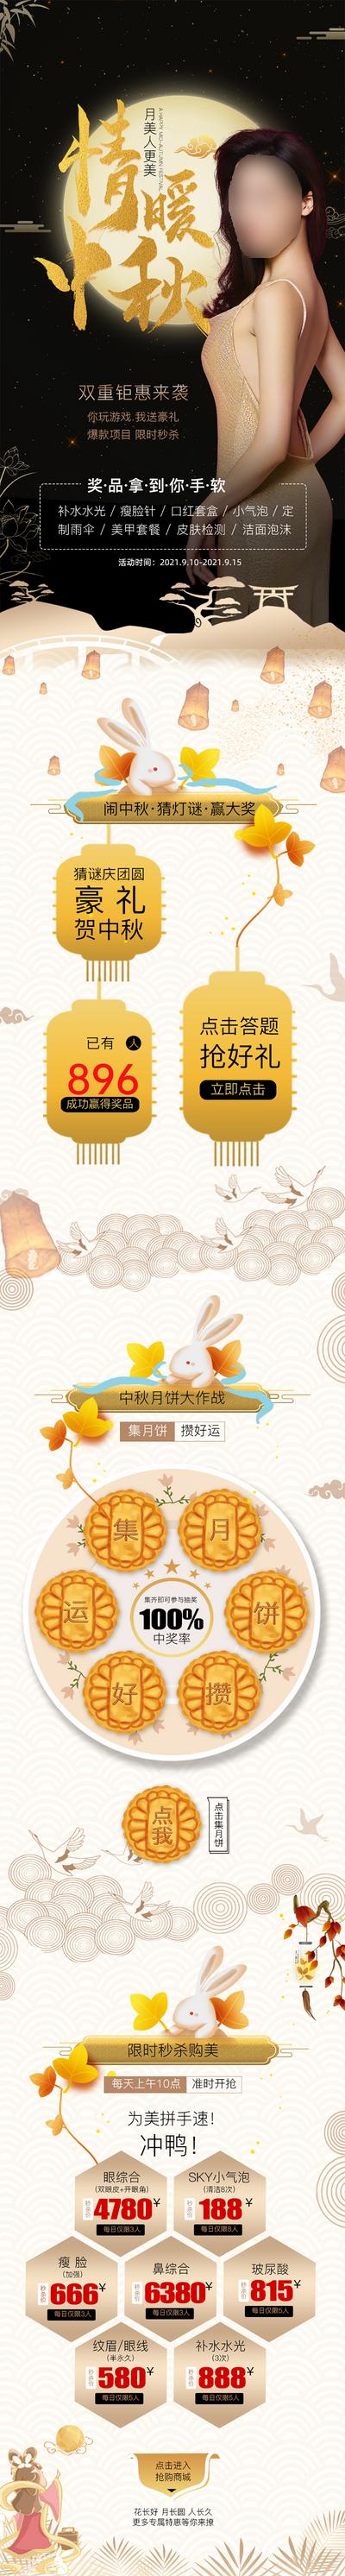 【南门网】专题设计 医美 整形 中国传统节日 中秋节 豪礼 月饼 秒杀